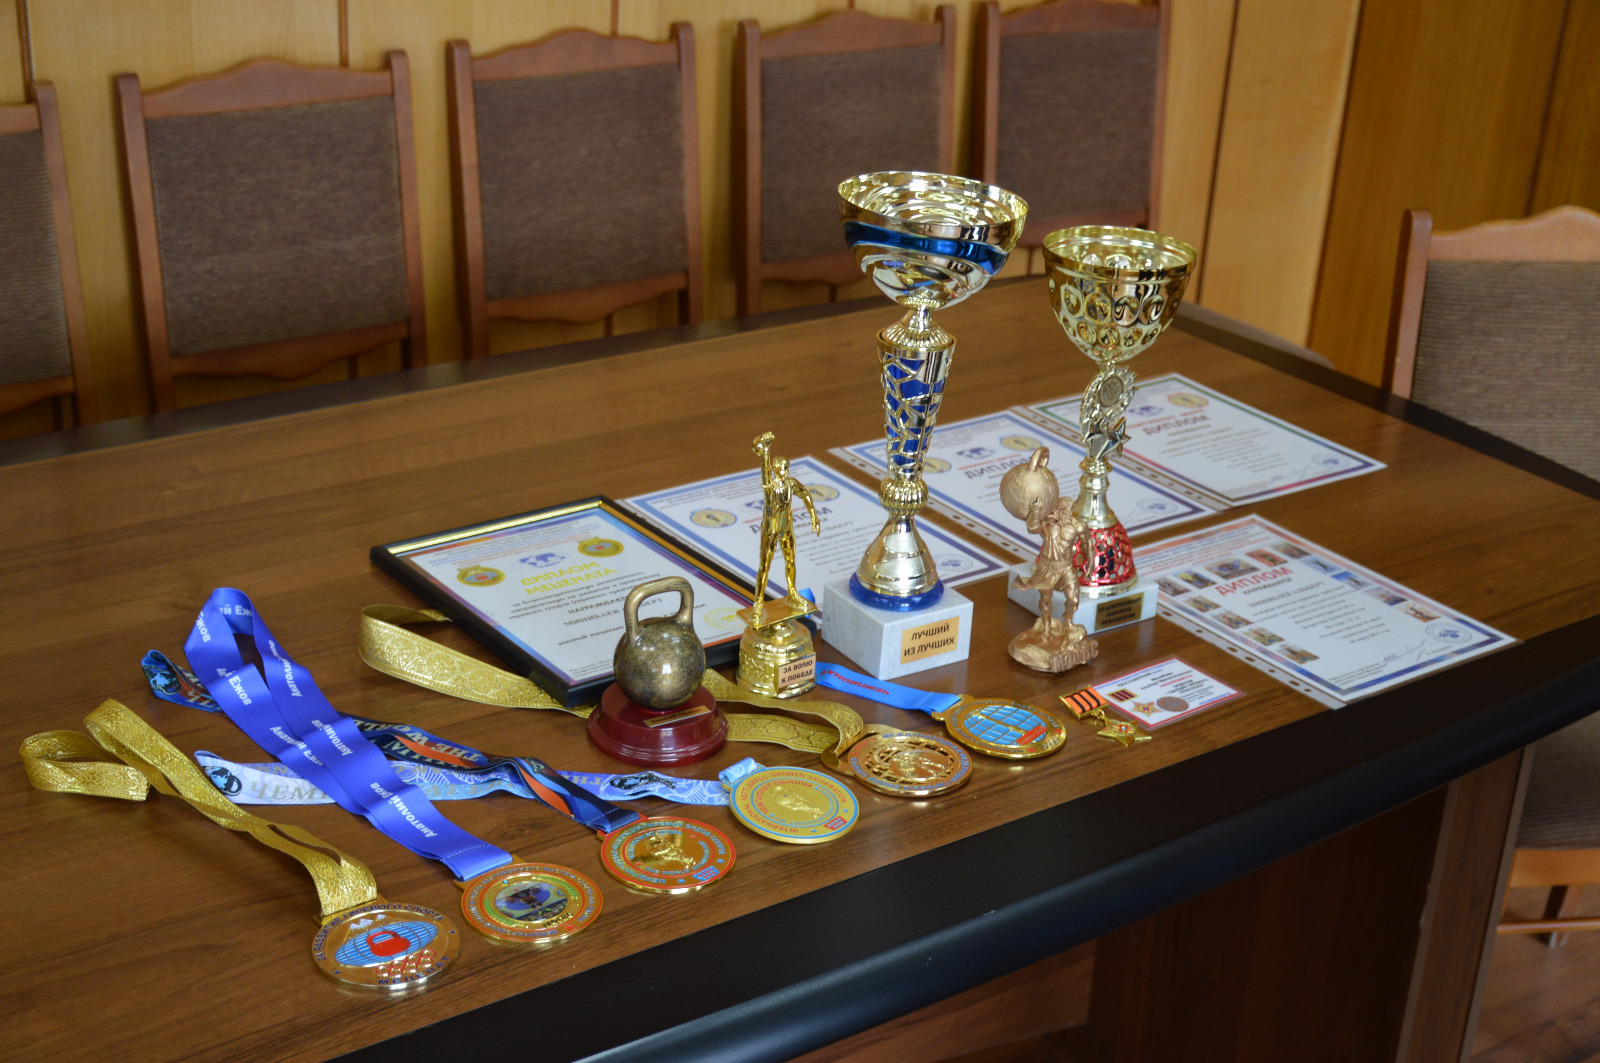 Заслуженный спортсмен Караидельского района вернулся на малую родину с очередной победой